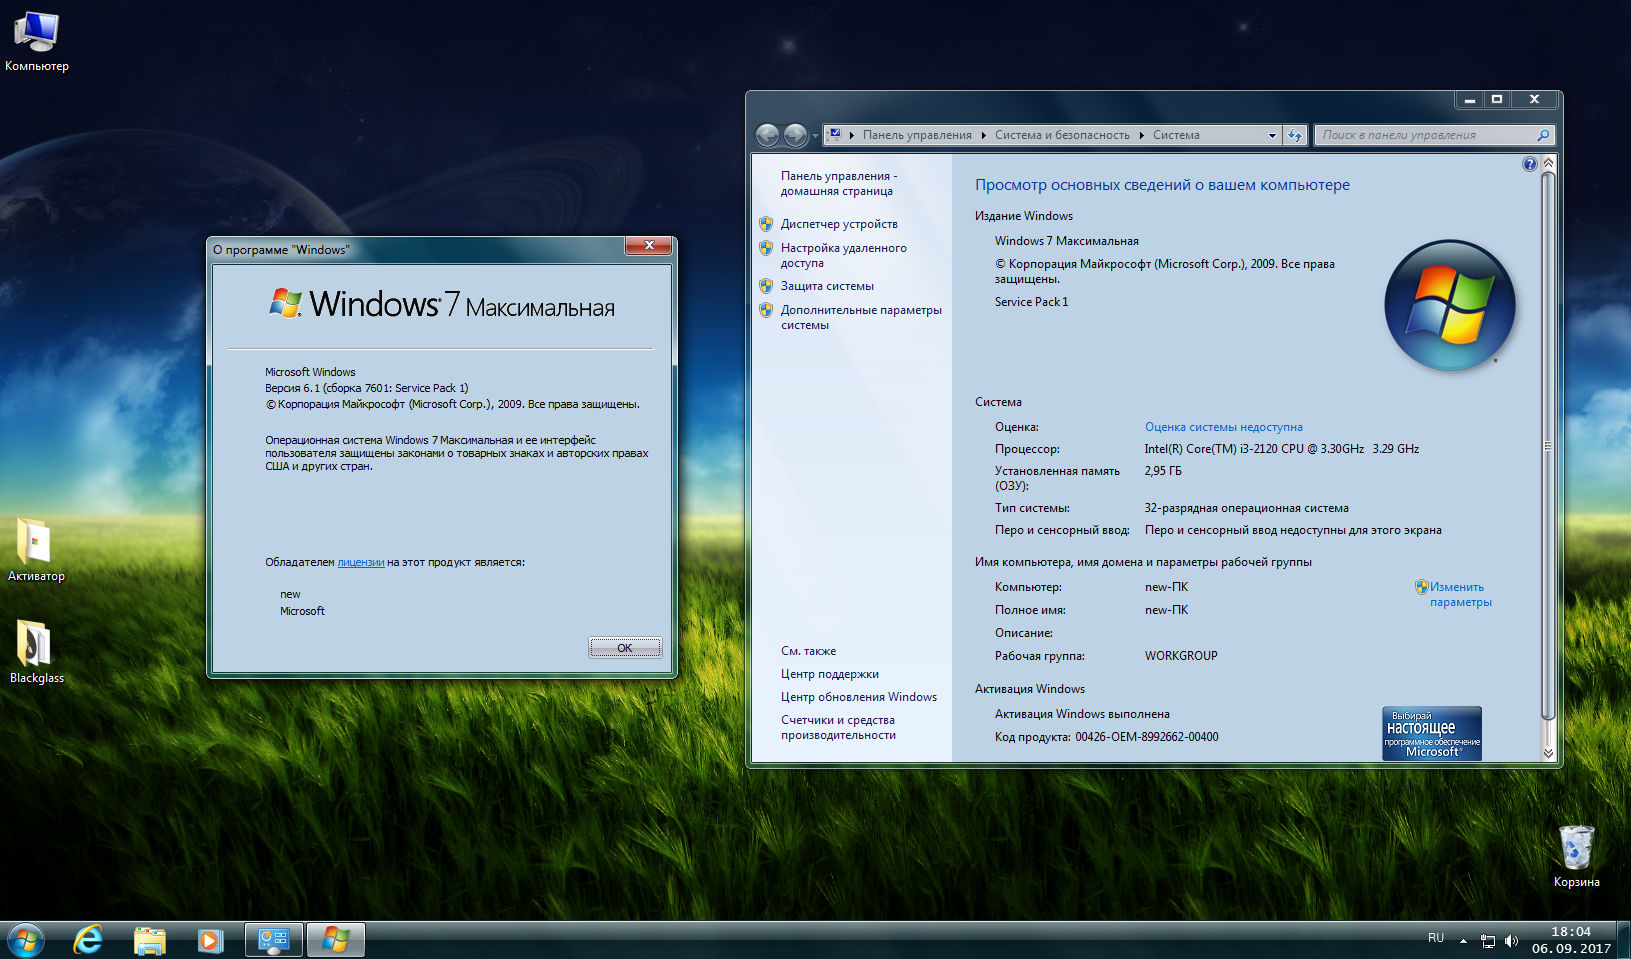 Красивые сборки Windows. OEM сборка Windows. Windows 7 все сборки. Лучшие сборки виндовс. Сборки виндовс самому